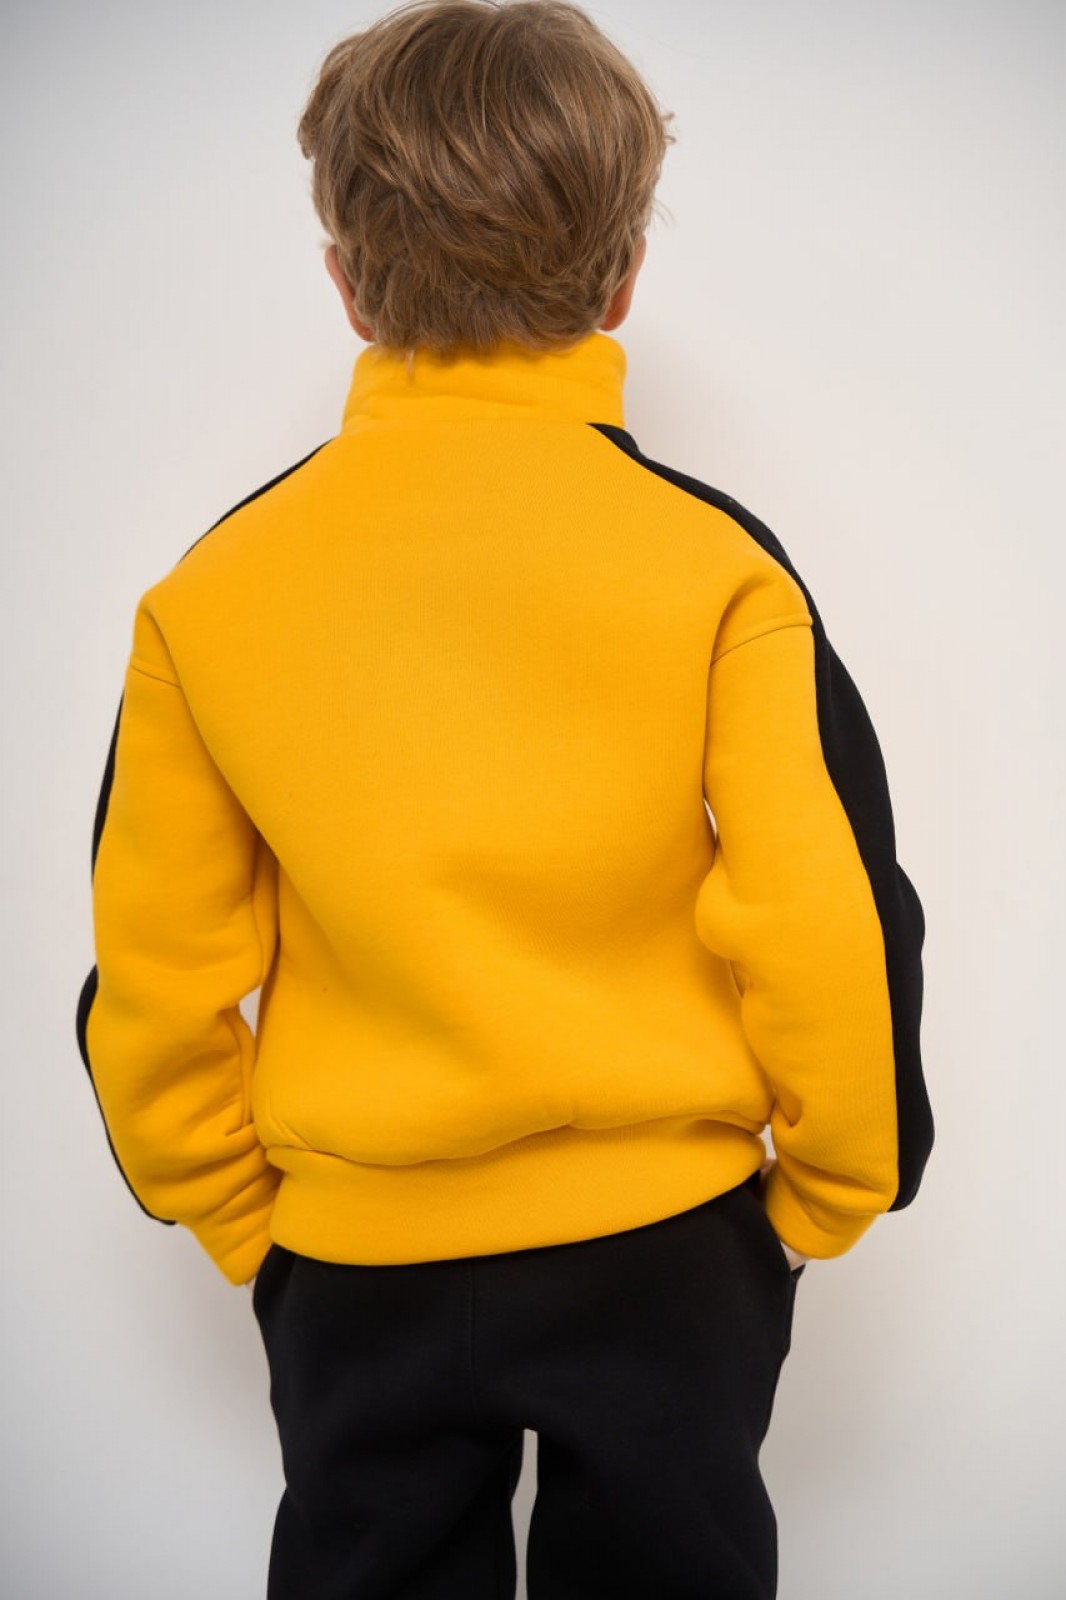 Теплий костюм для хлопчика колір жовтий р.110 447457